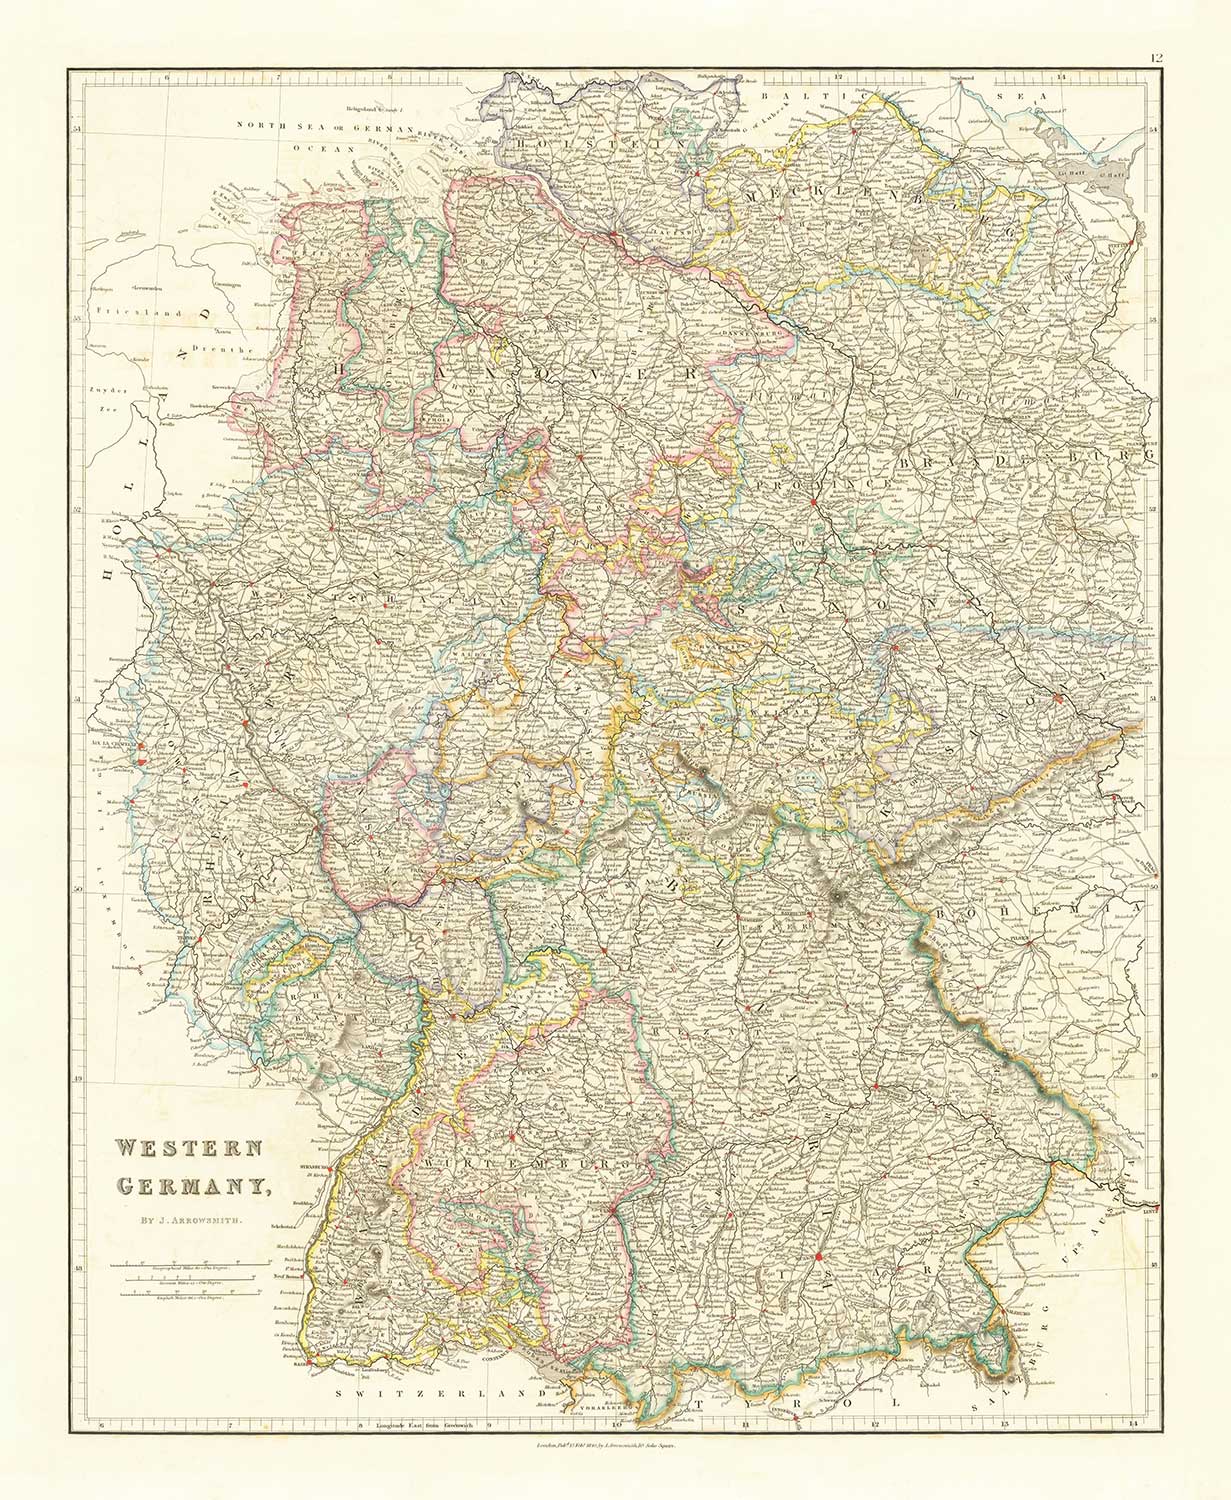 Alte Karte von Westdeutschland von John Arrowsmith aus dem Jahr 1862 - Berlin, München, Stuttgart, Hannover, Nürnberg, Frankfurt